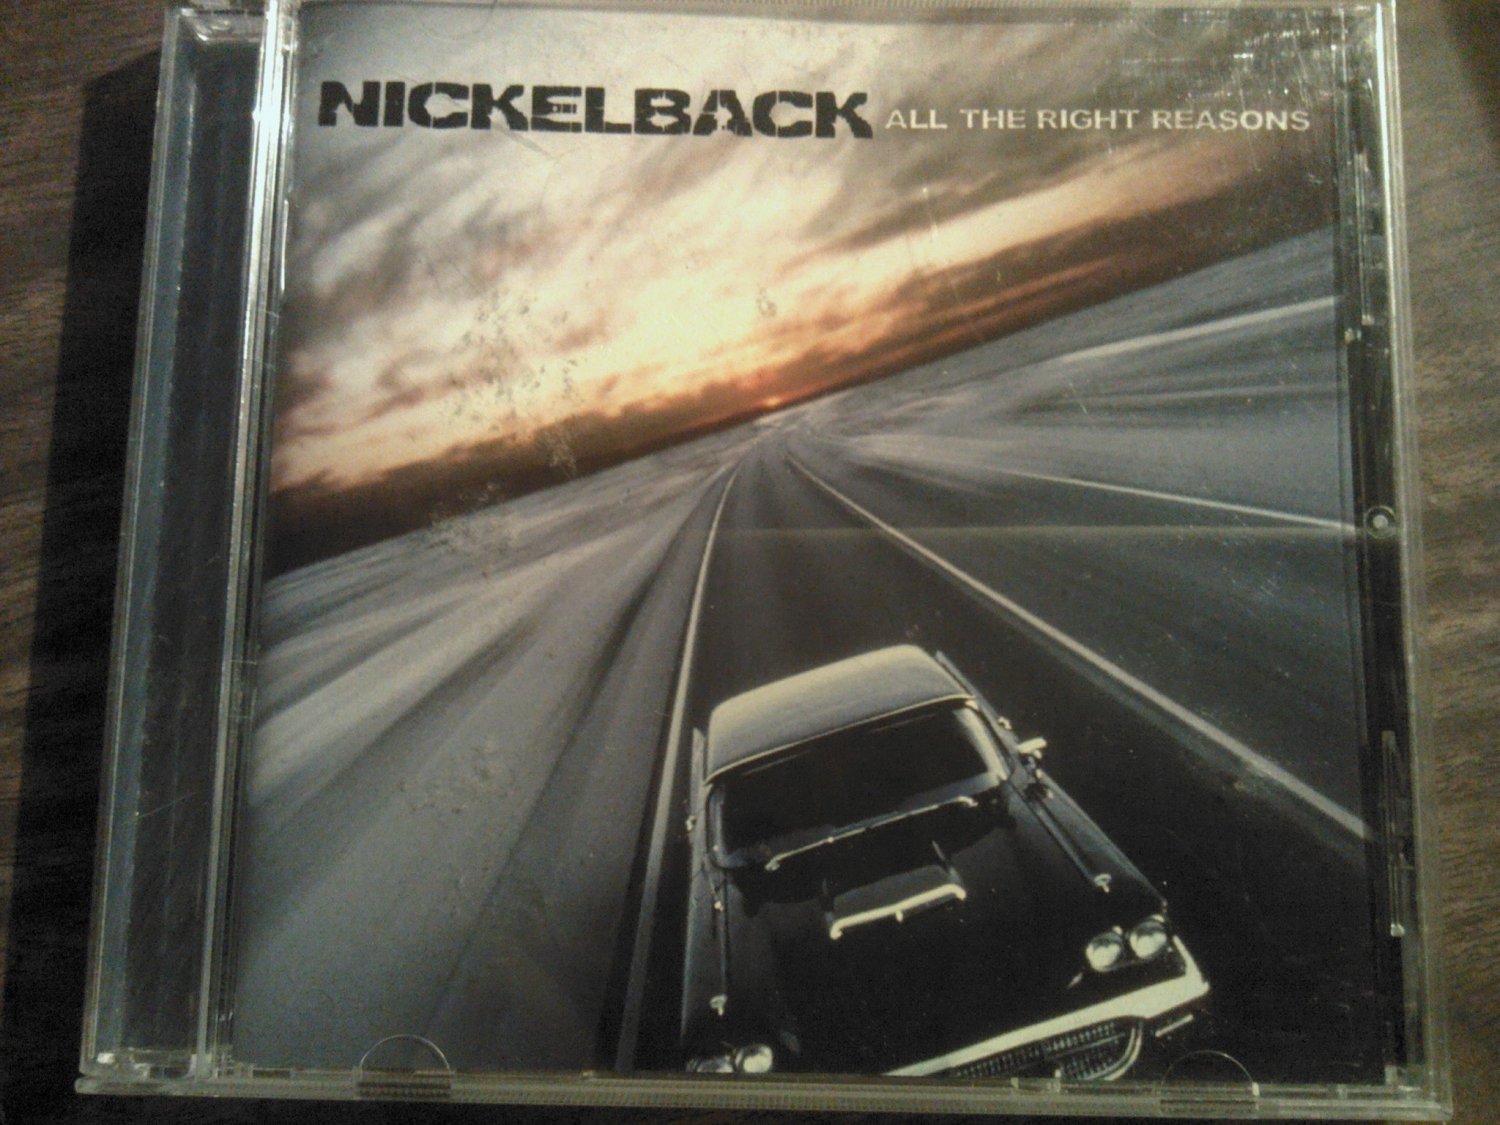 Nickelback альбомы. CD Nickelback. Nickelback all the right reasons 2005. Nickelback обложки альбомов. All the right reasons Nickelback альбом.